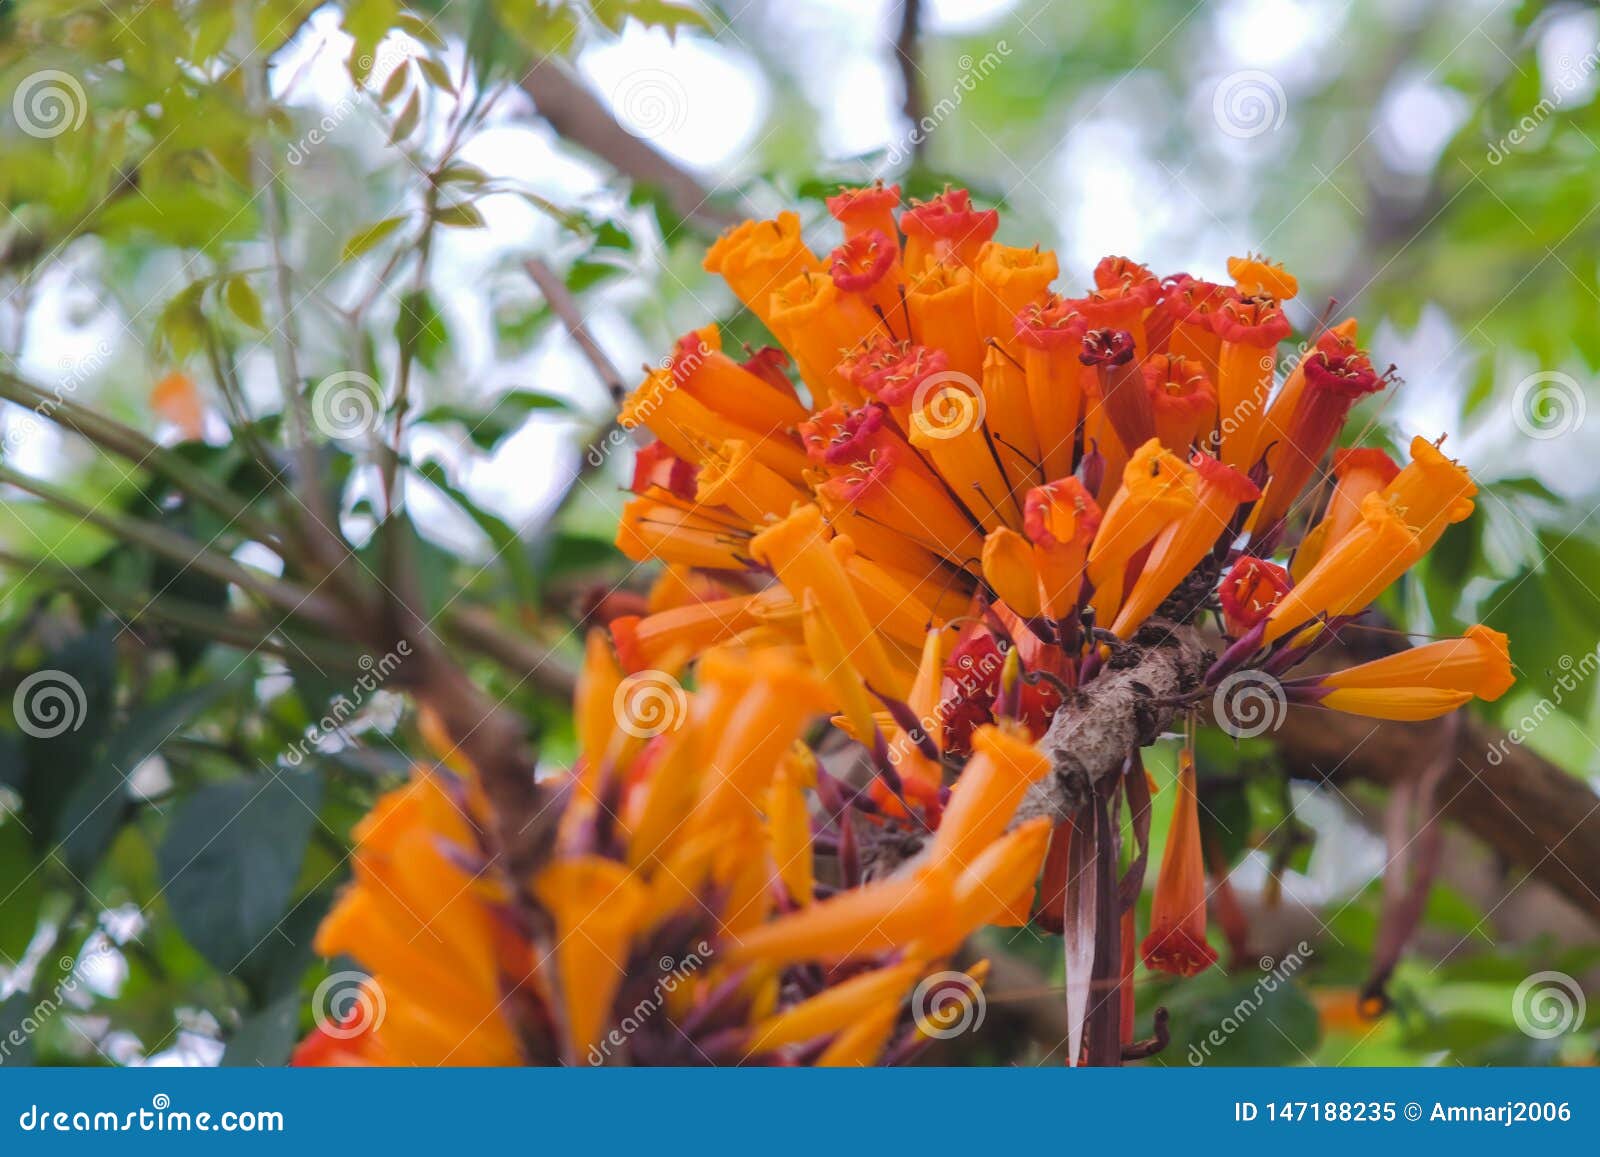 orange radermachera ignea flowers or tree jasmine